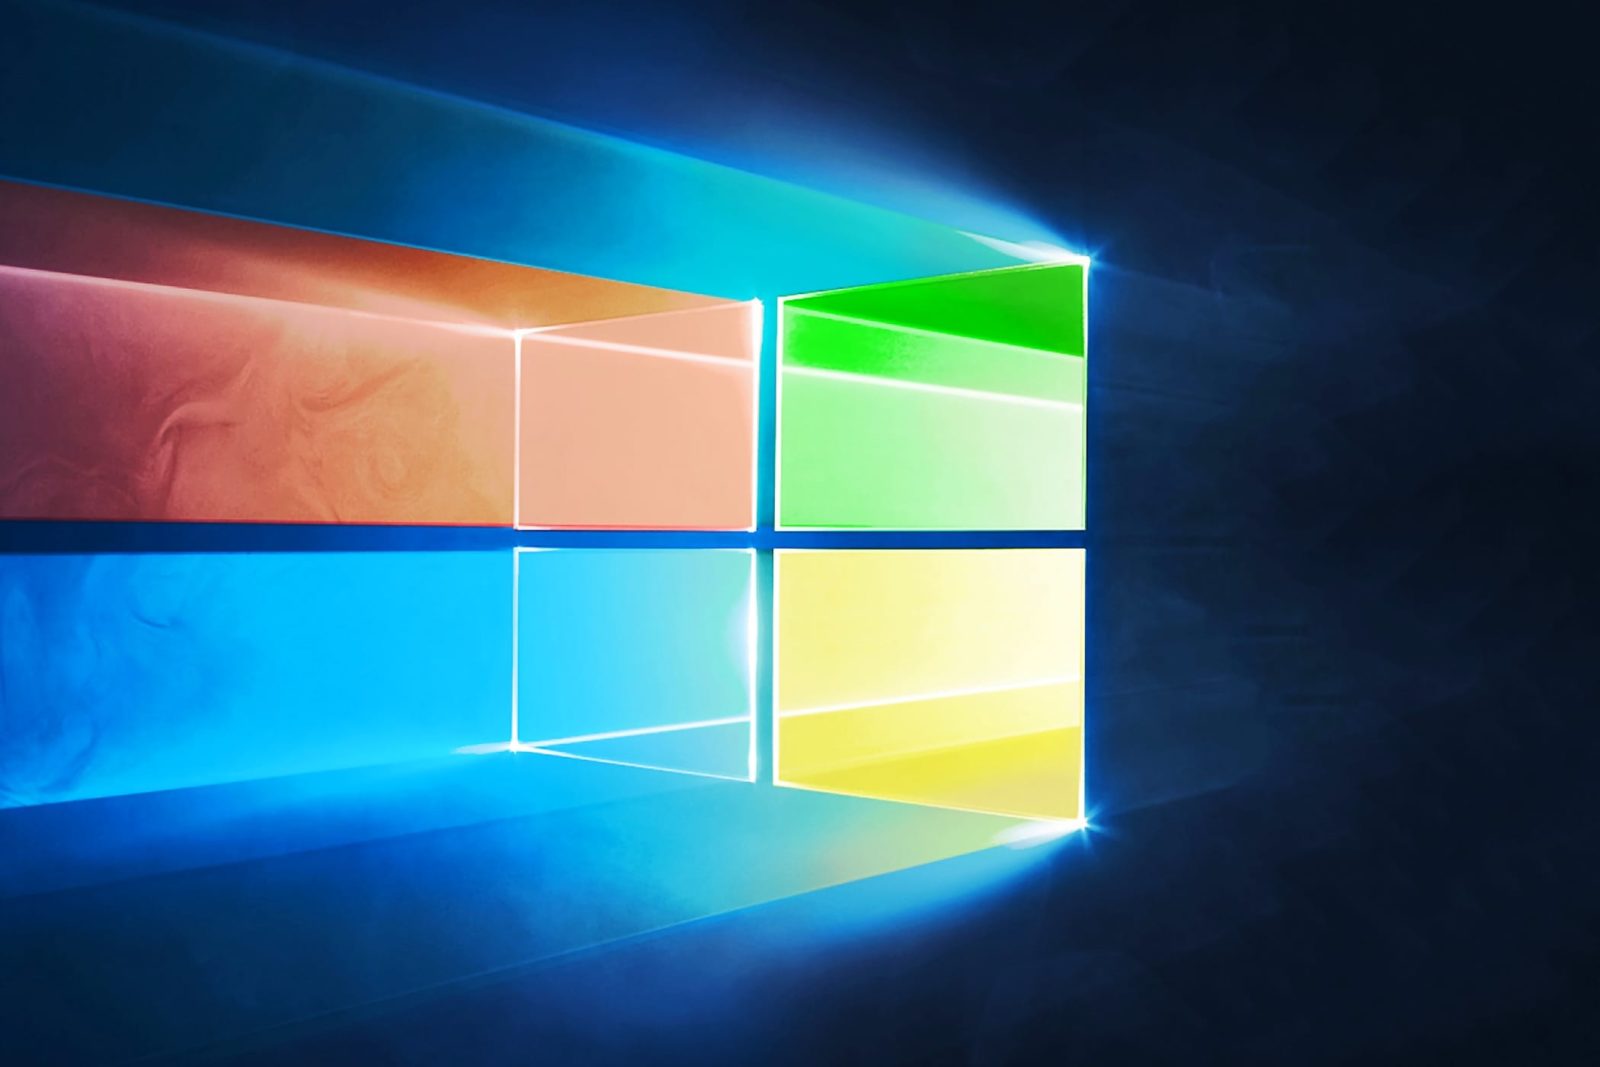 Microsoft кардинально изменила популярное приложение Windows 10